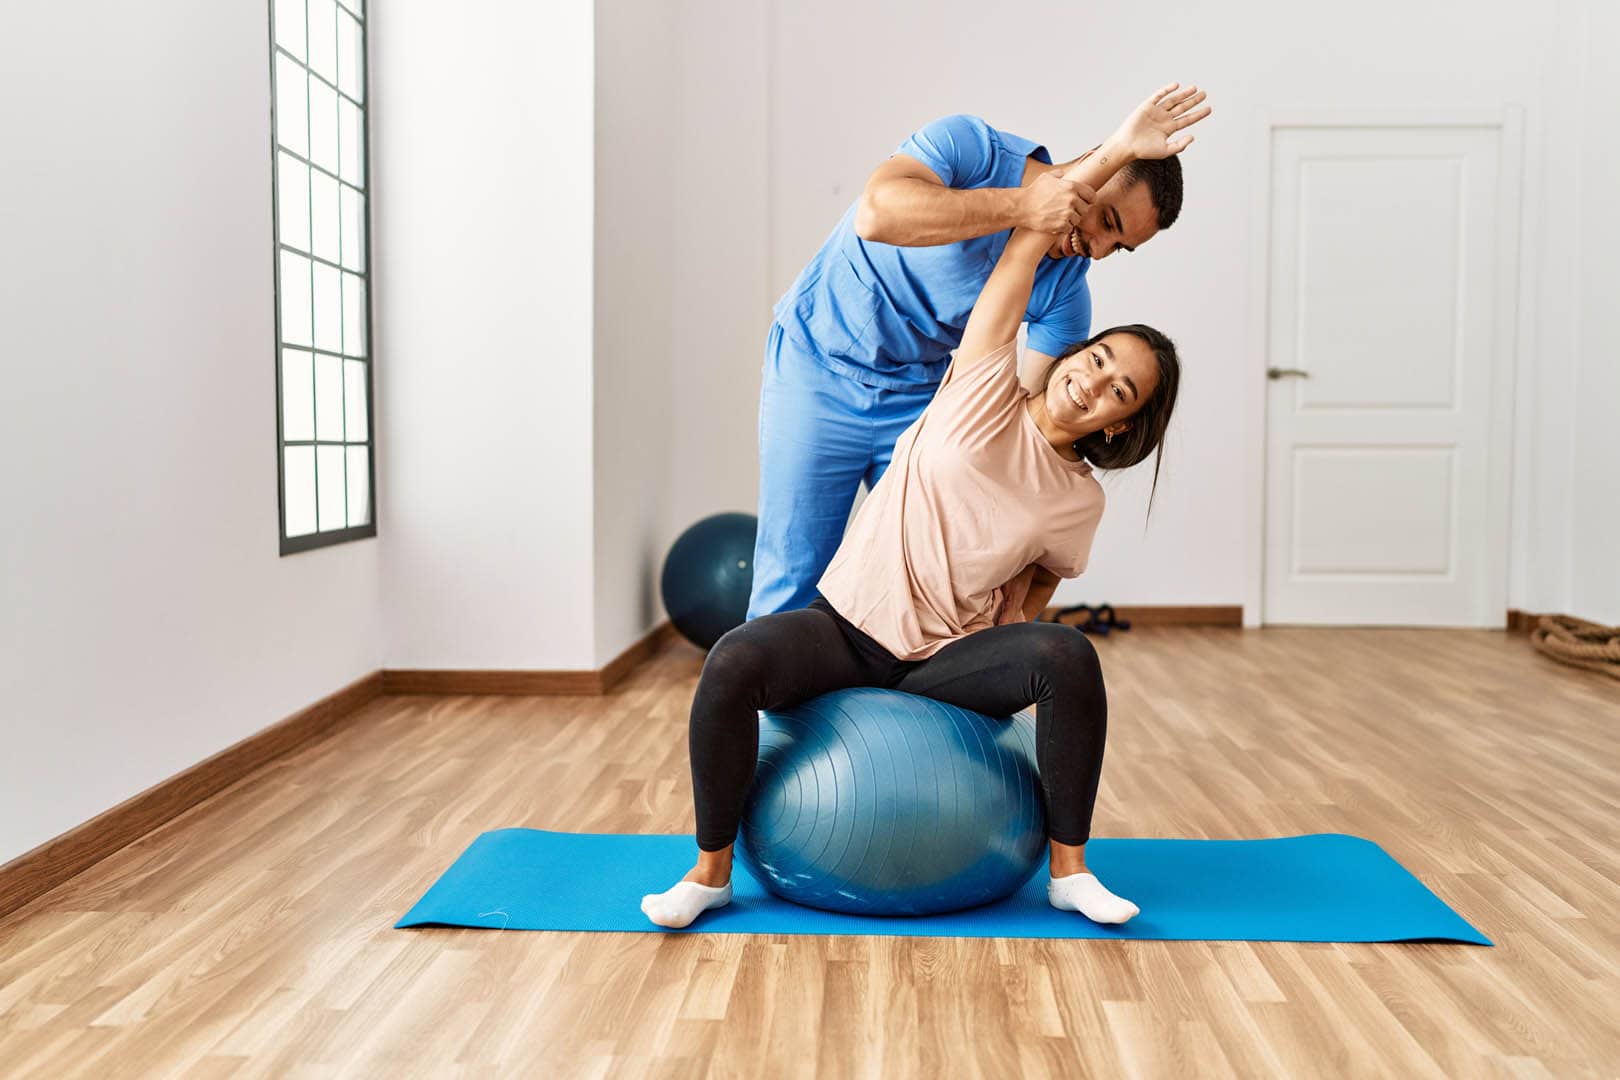 Frau übt Bewegungstherapie auf einem Gymnastikball zu Hause mit Hilfe eines Physiotherapeuten, der ihre Haltung korrigiert.